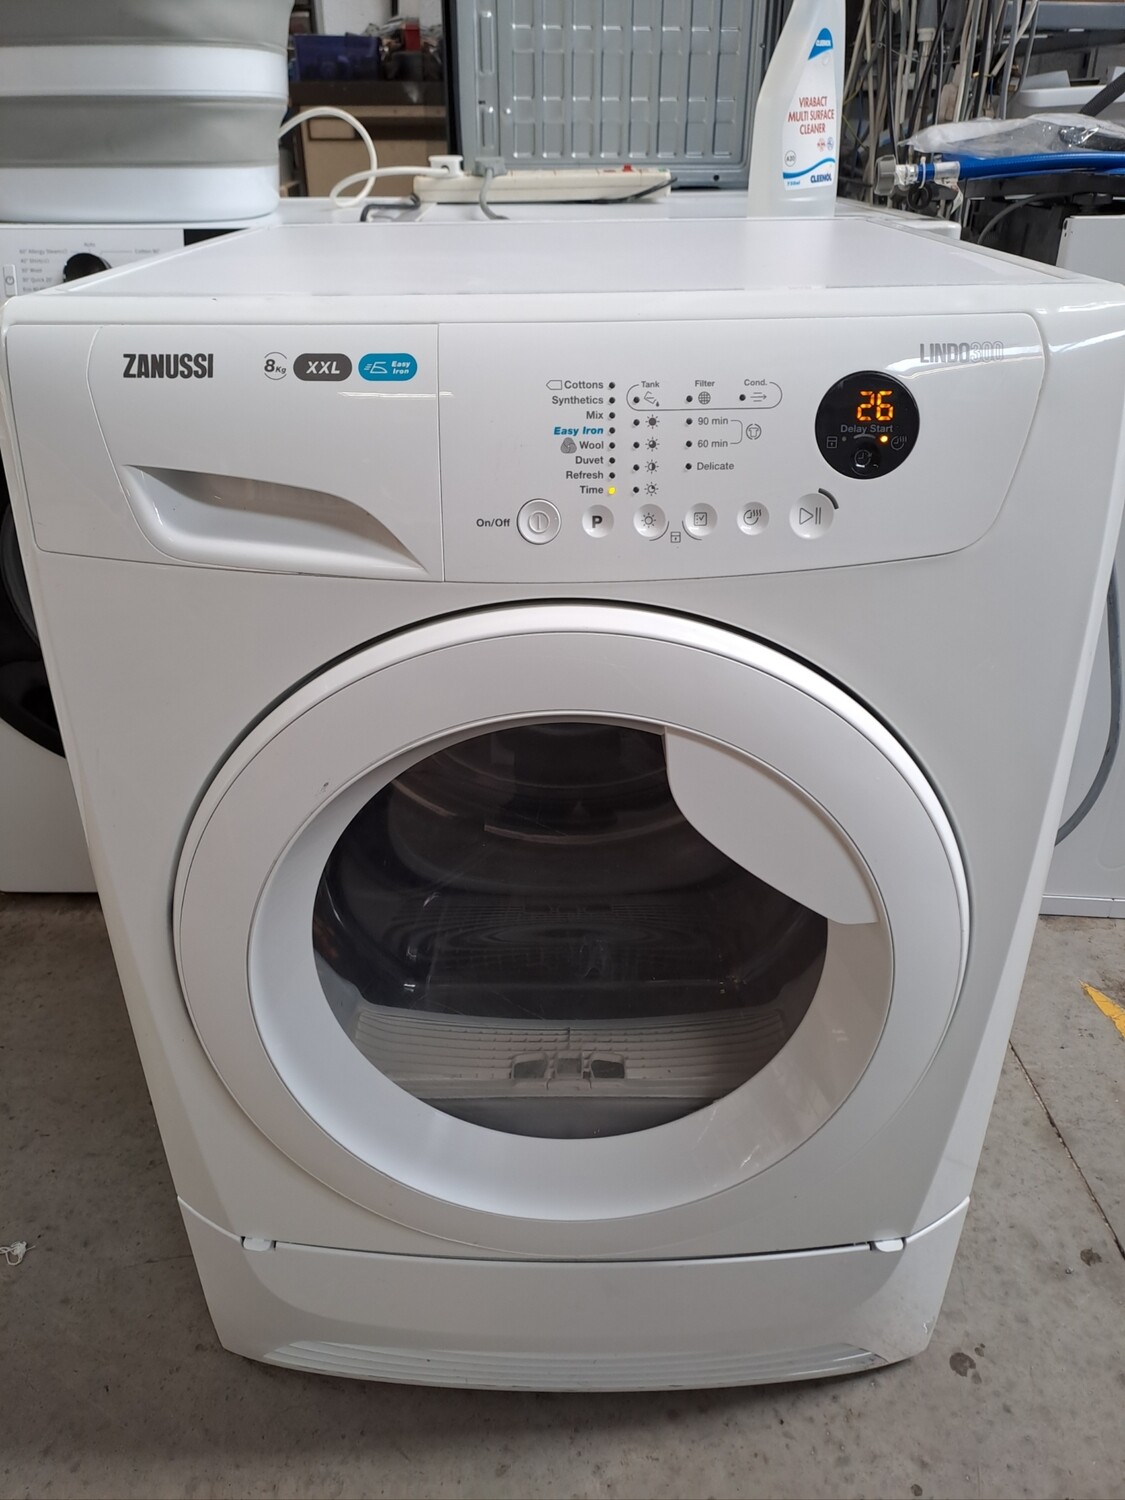 Zanussi ZDC8230W XXL 8kg Condenser Dryer White Refurbished 6 Months Guarantee 